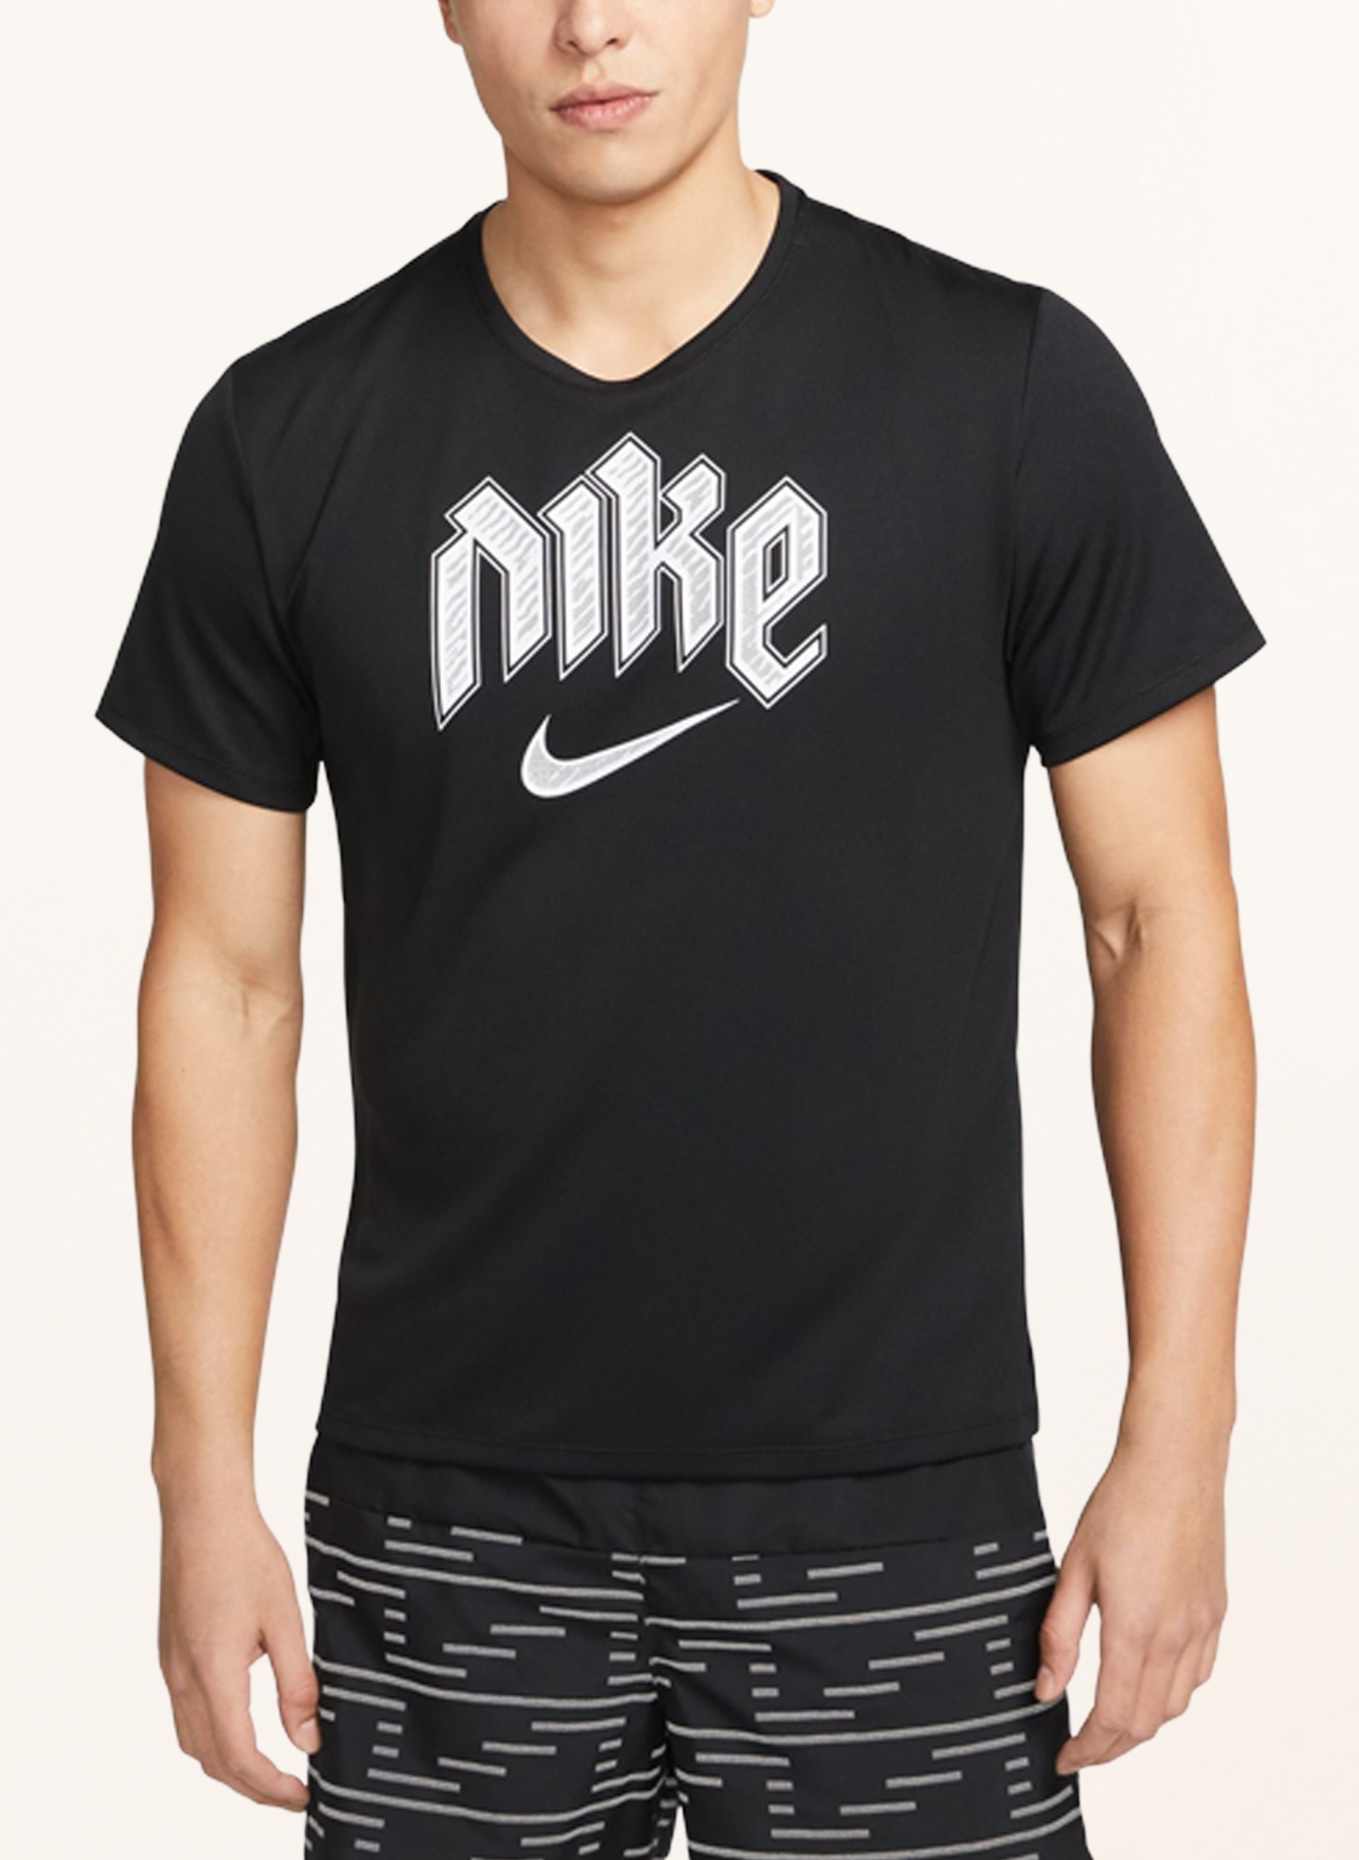 DRI-FIT RUN DIVISION schwarz/ Laufshirt in Nike weiss MILER